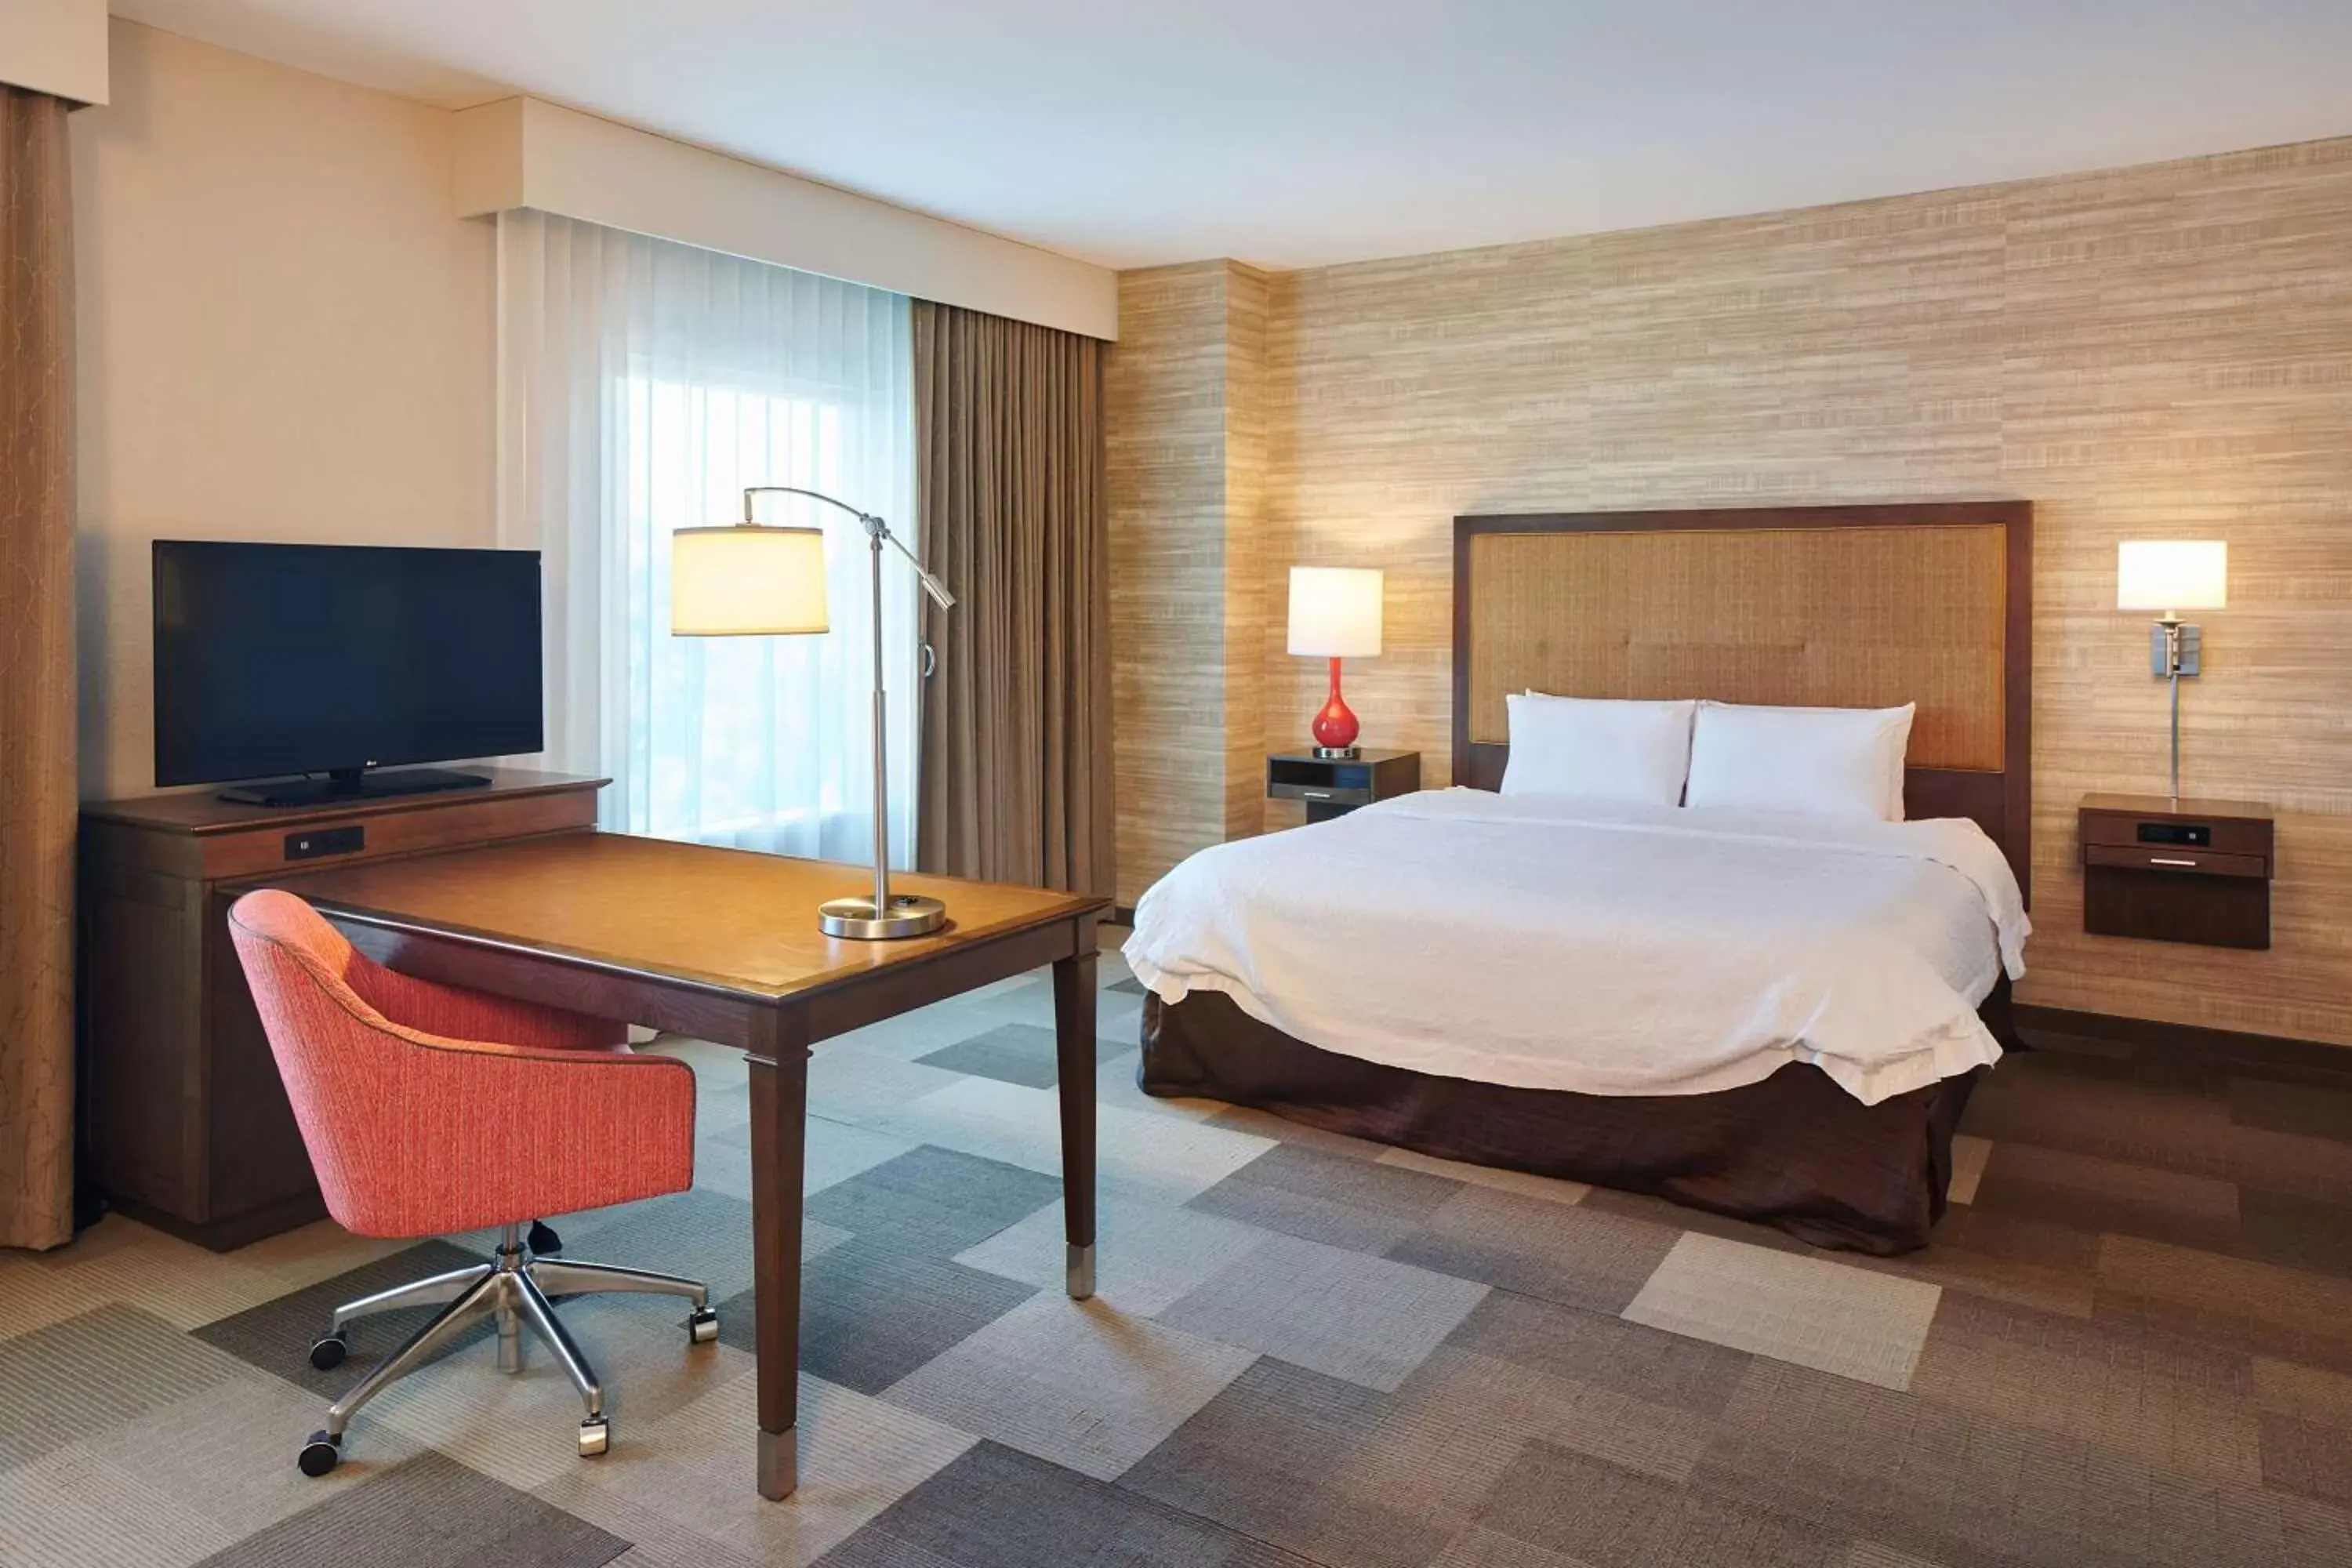 Bedroom, Bed in Hampton Inn & Suites Oahu/Kapolei, HI - FREE Breakfast